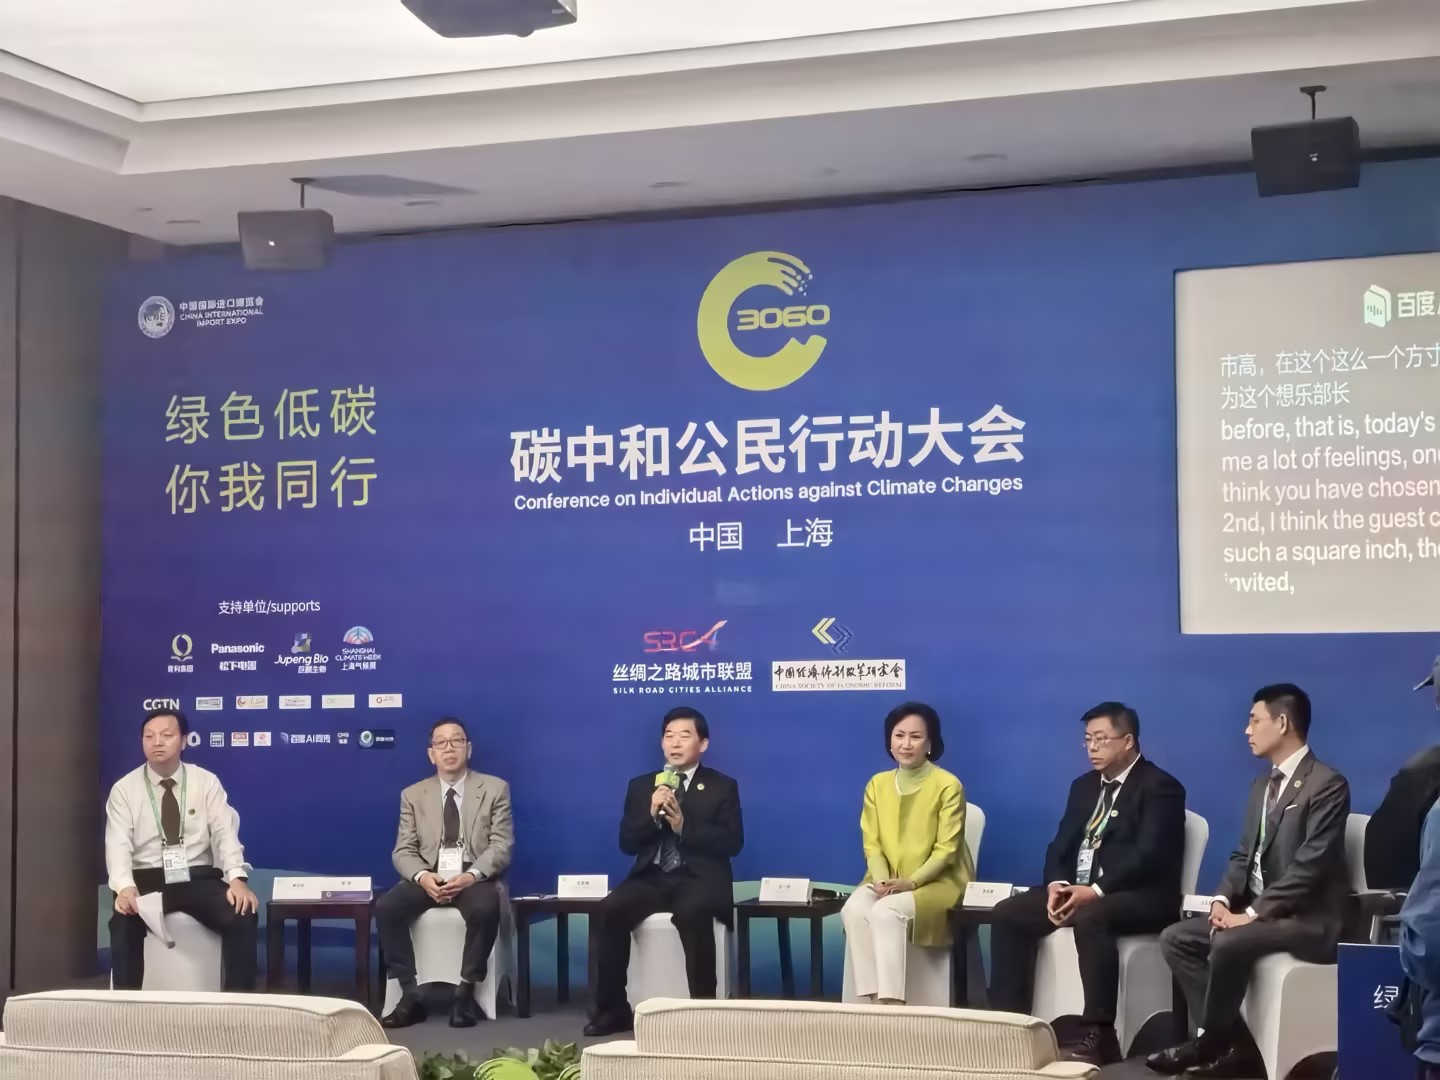 王思强参加第六届中国国际进口博览会